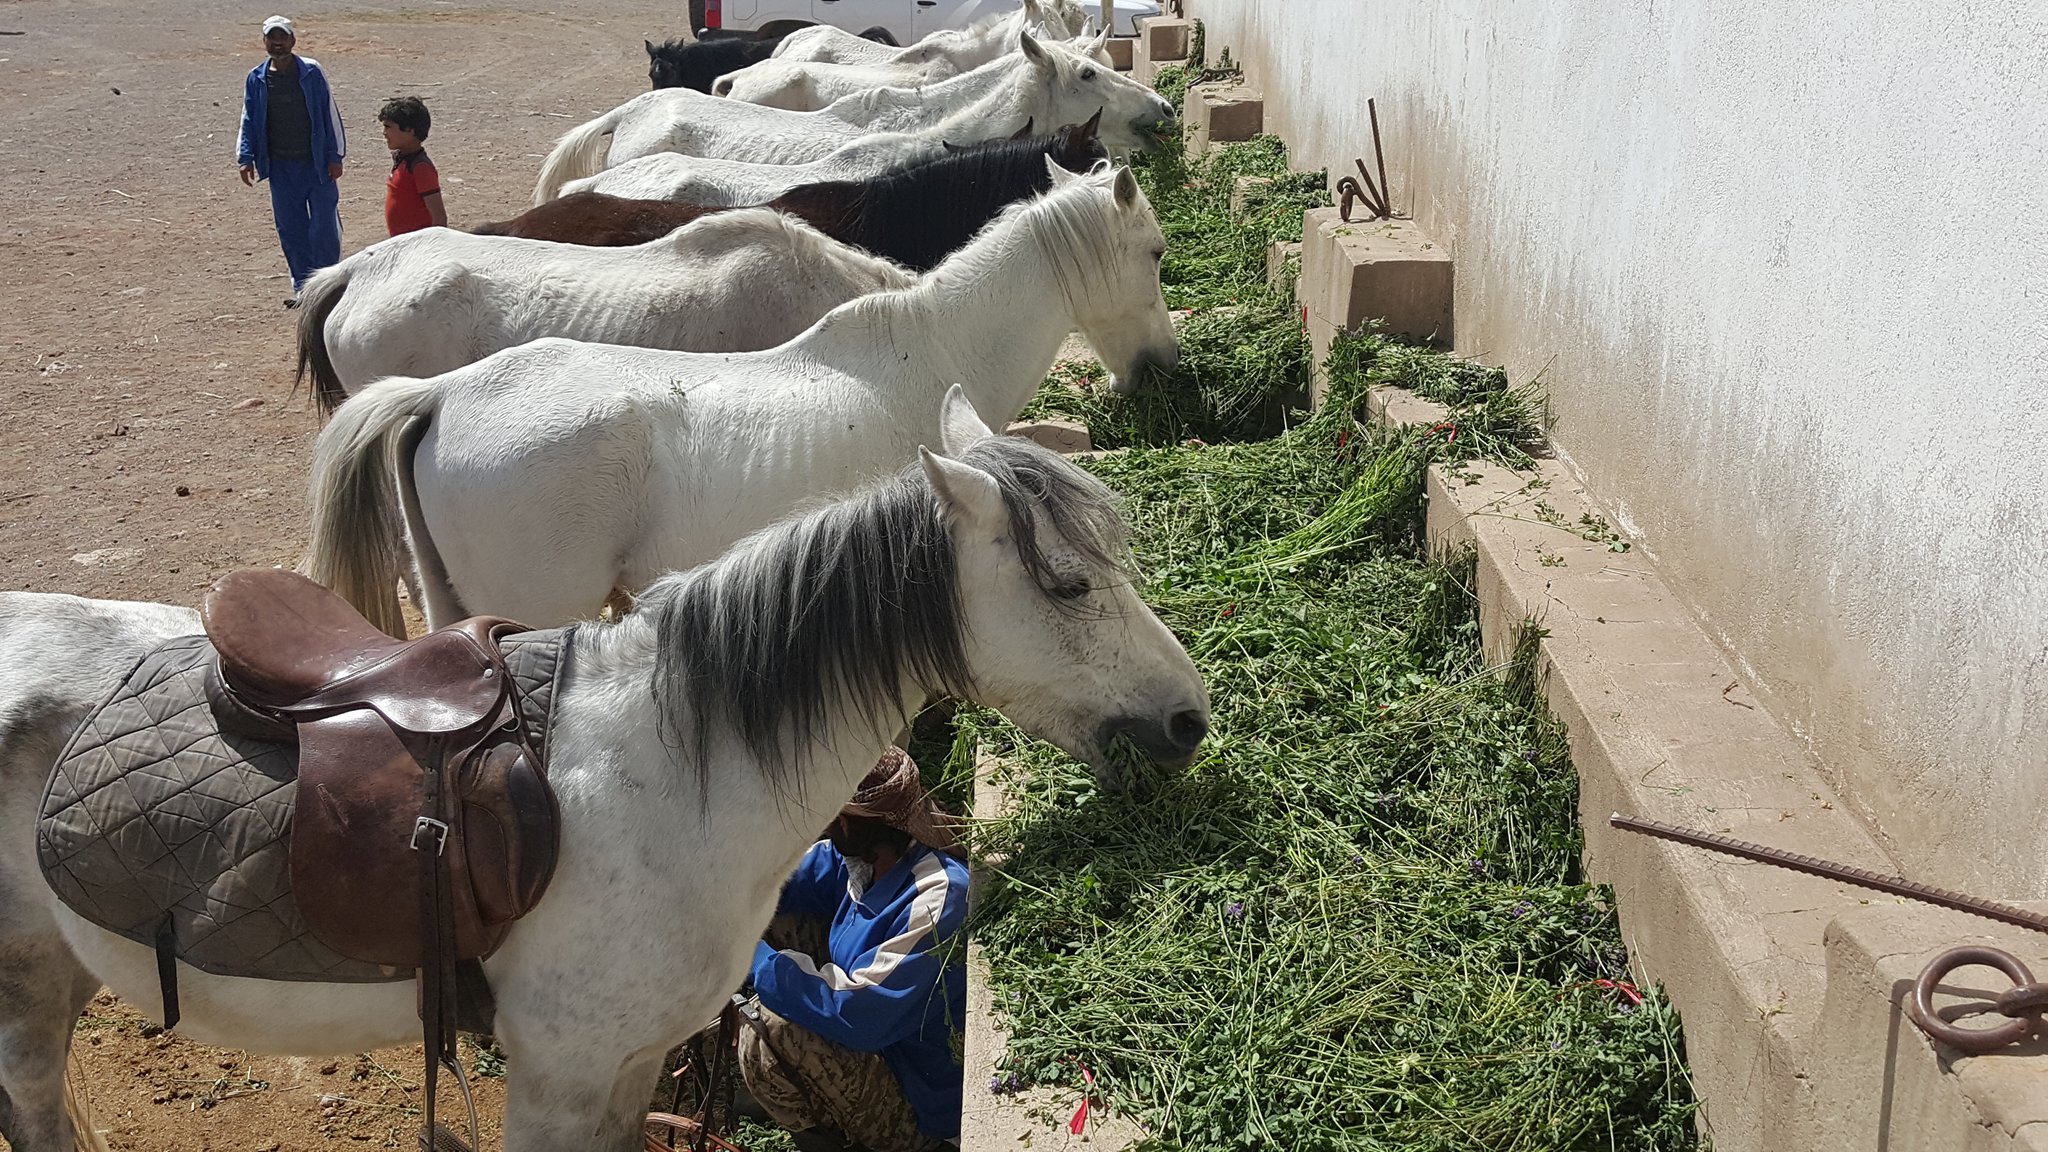 dhamar close up horses eating OWAP-AR food so skeletal 16 nov 2018 yemen rescue Helall coordinator.jpg